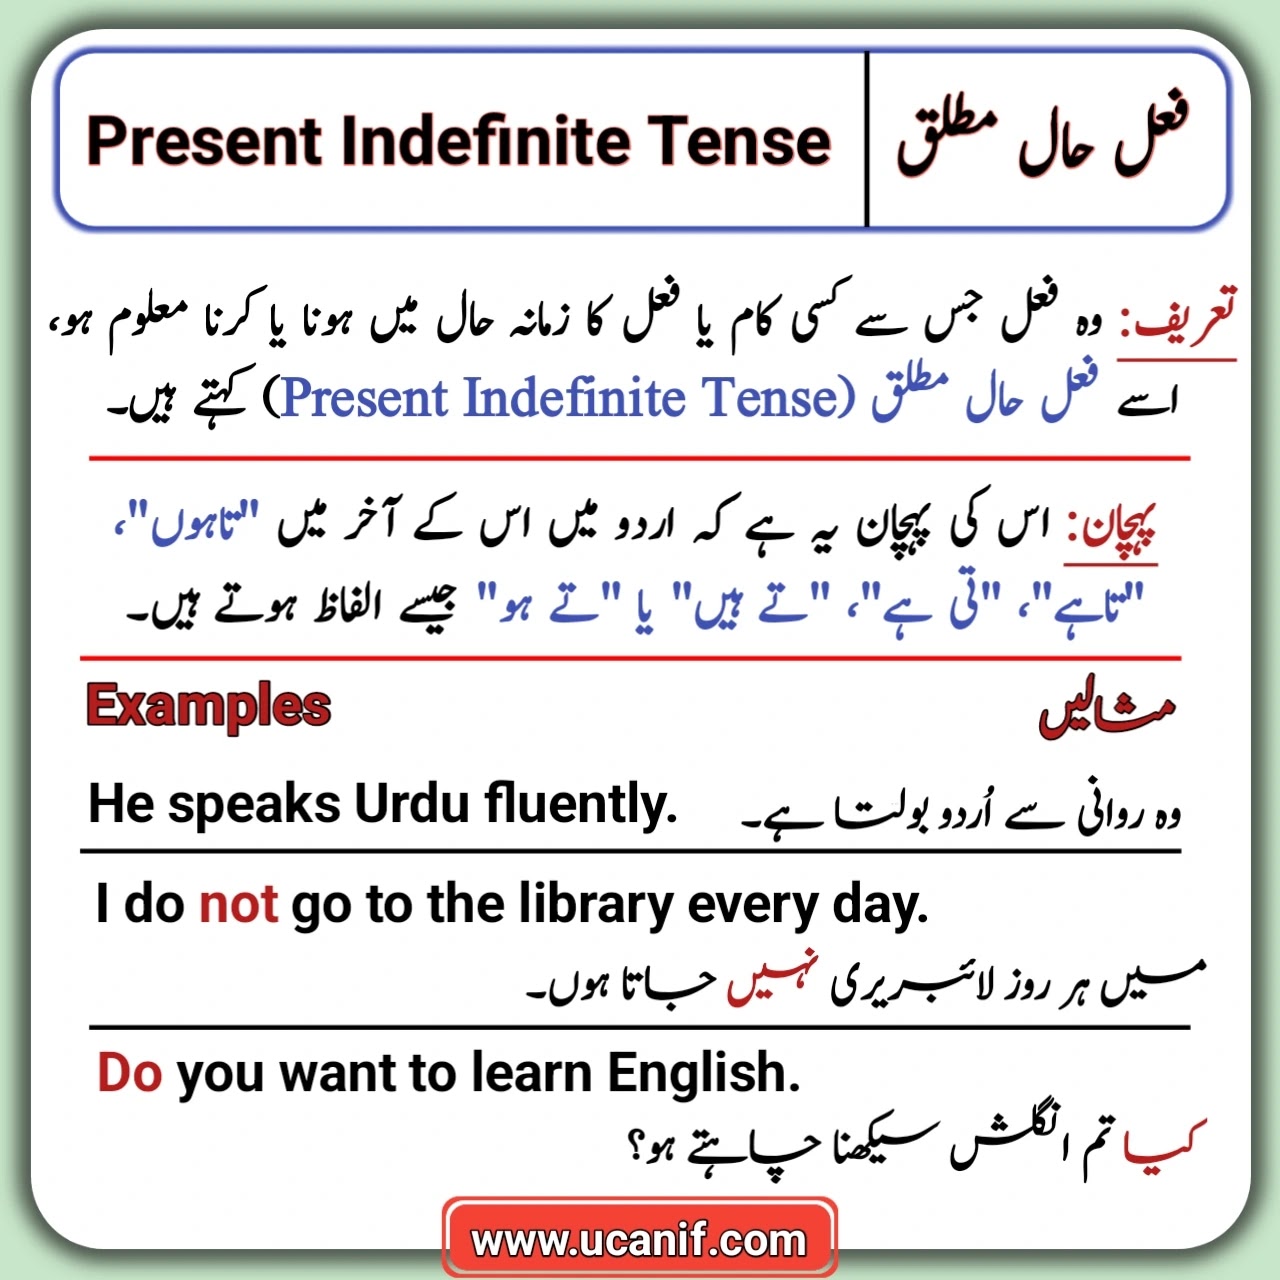 Present indefinite Tense in Urdu, Simple Present Tense in Urdu, Present Indefinite Tense examples in Urdu, Present indefinite Tense